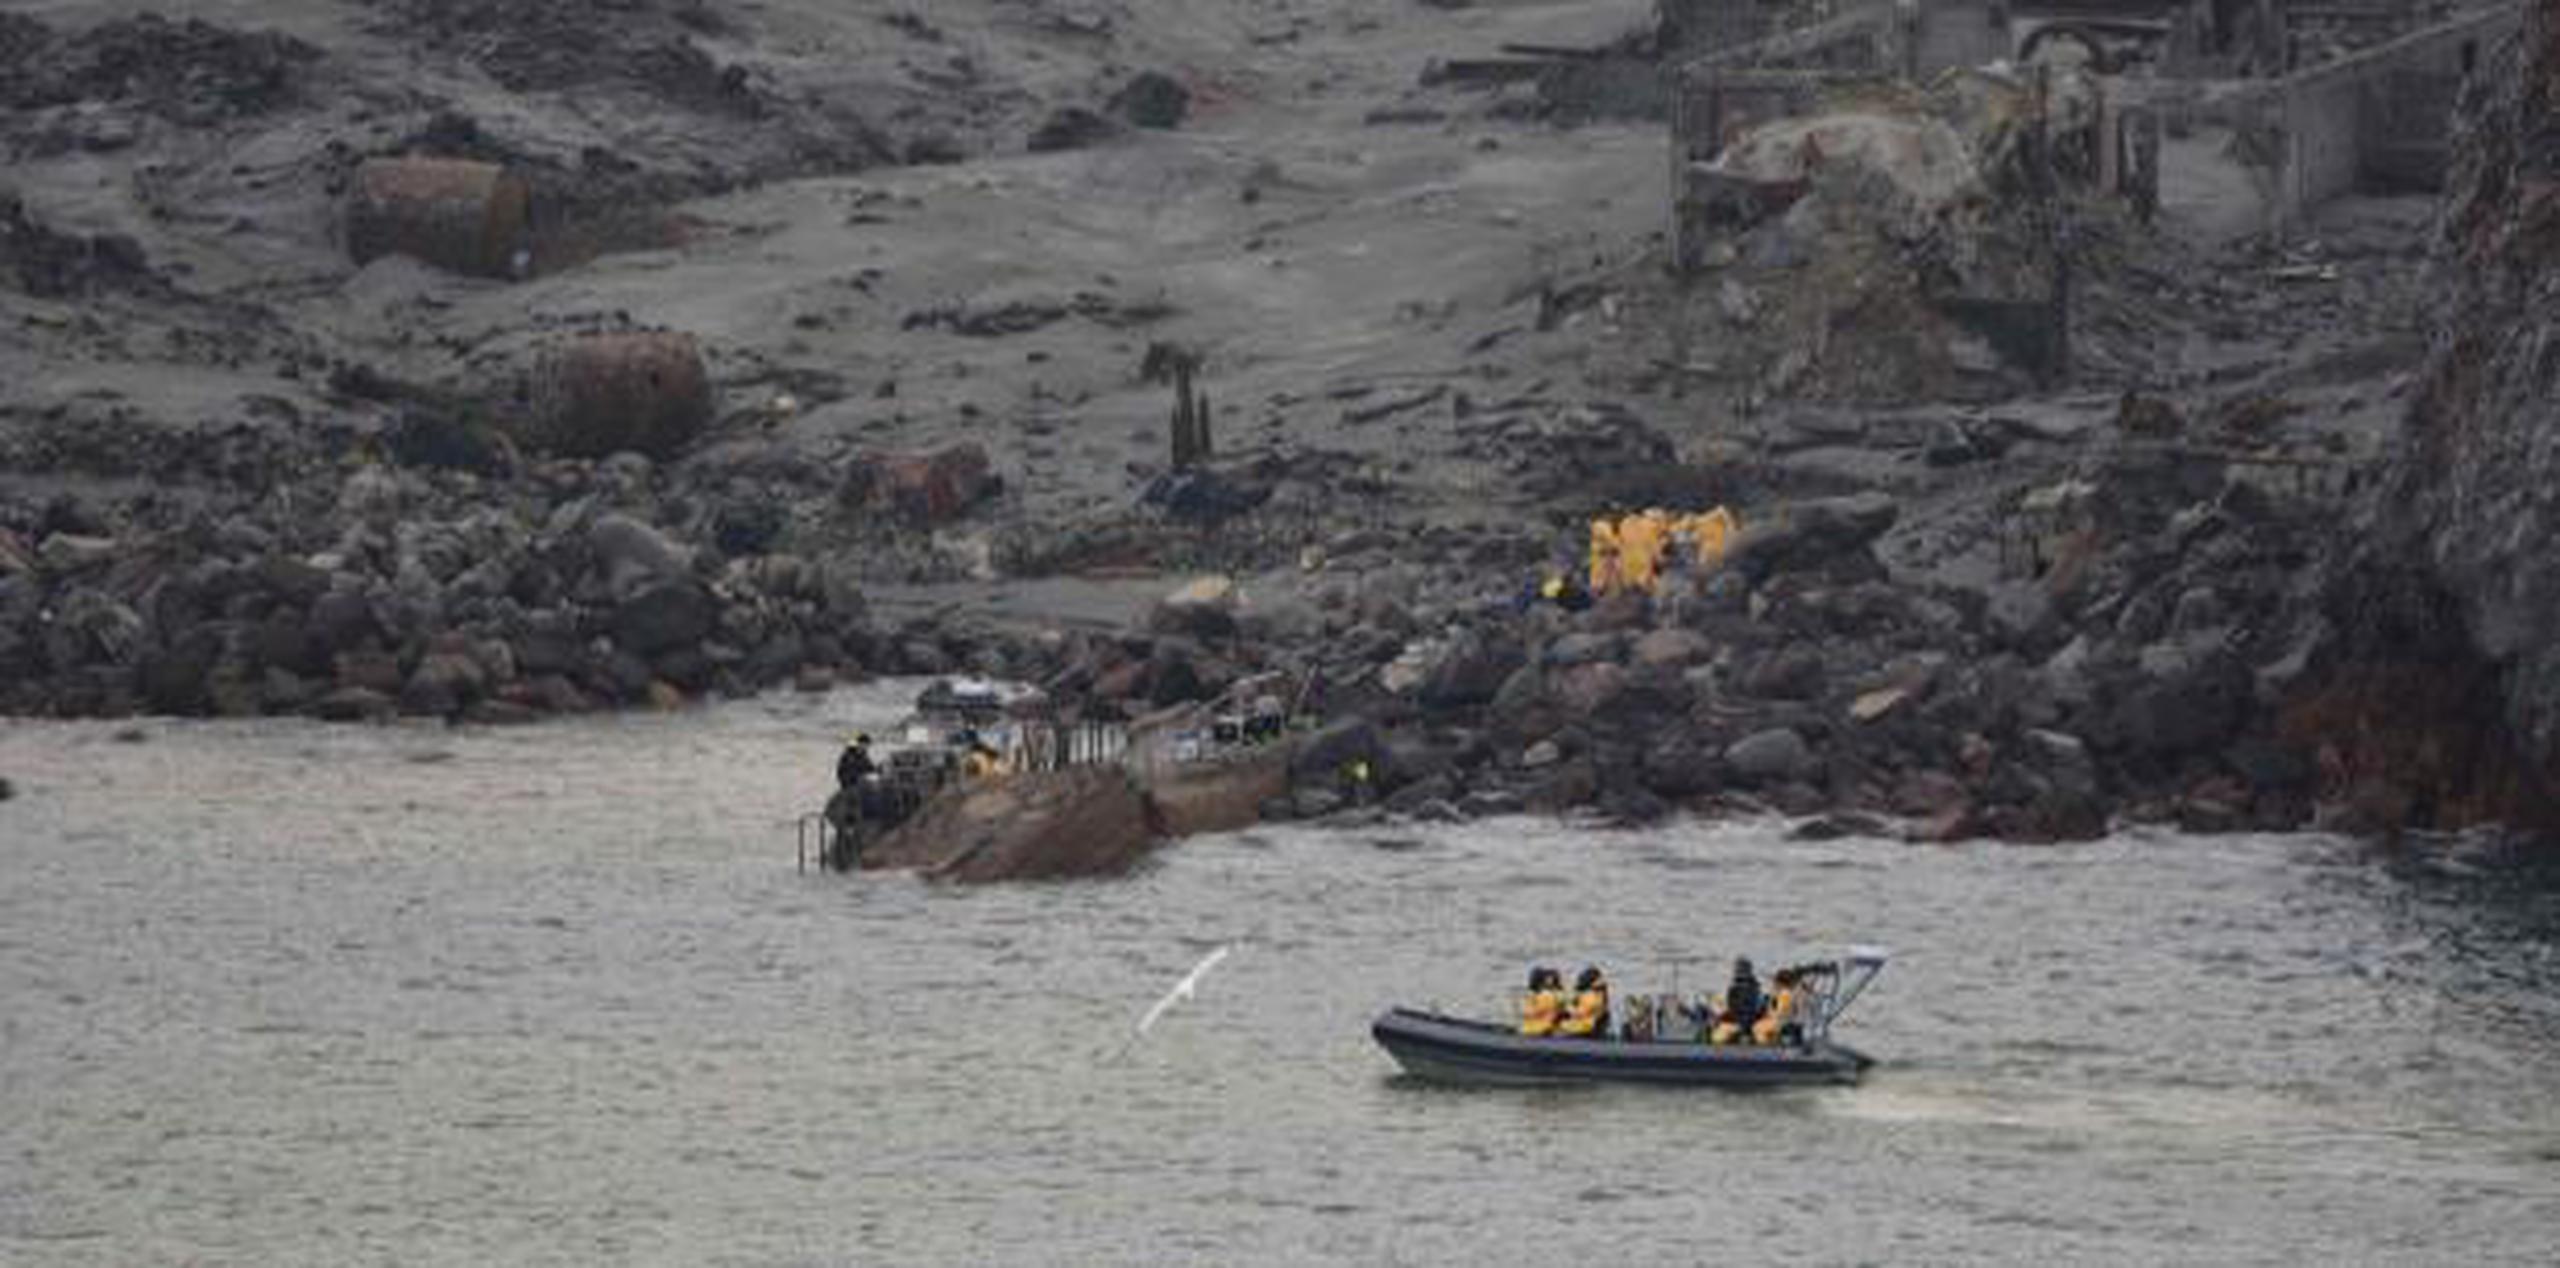 El operativo de rescate se llevó a cabo sin contratiempos, pero dos cuerpos aún no han sido localizados. (New Zealand Defence Force vía AP)